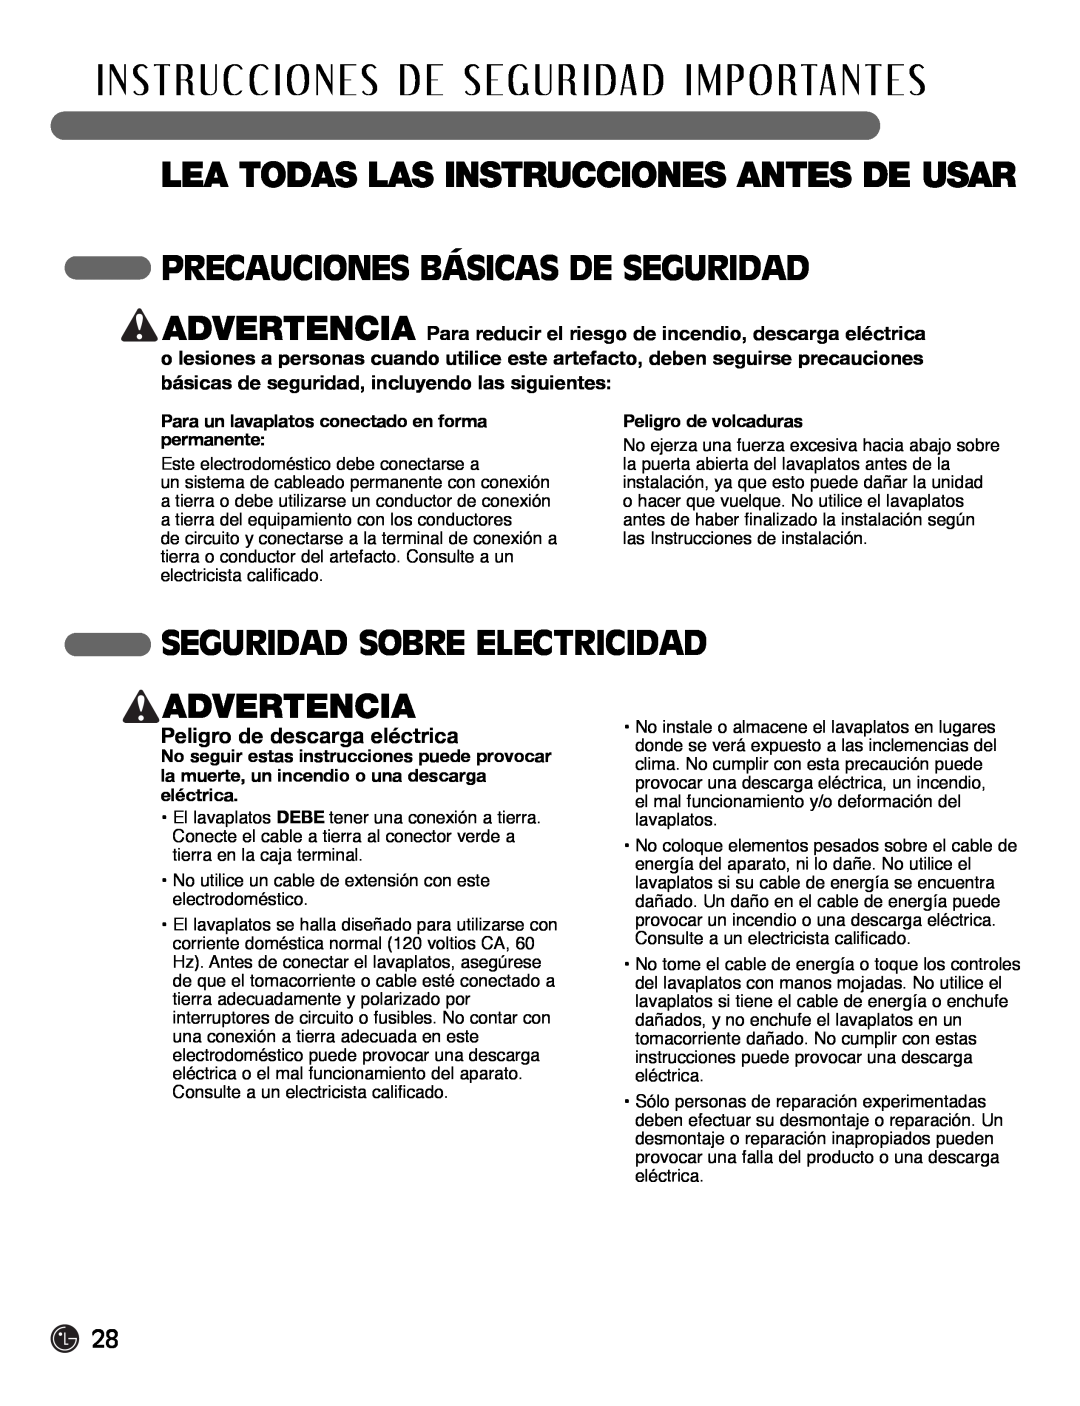 LG Electronics LDF7932BB Seguridad Sobre Electricidad, Advertencia, Peligro de descarga eléctrica, Peligro de volcaduras 